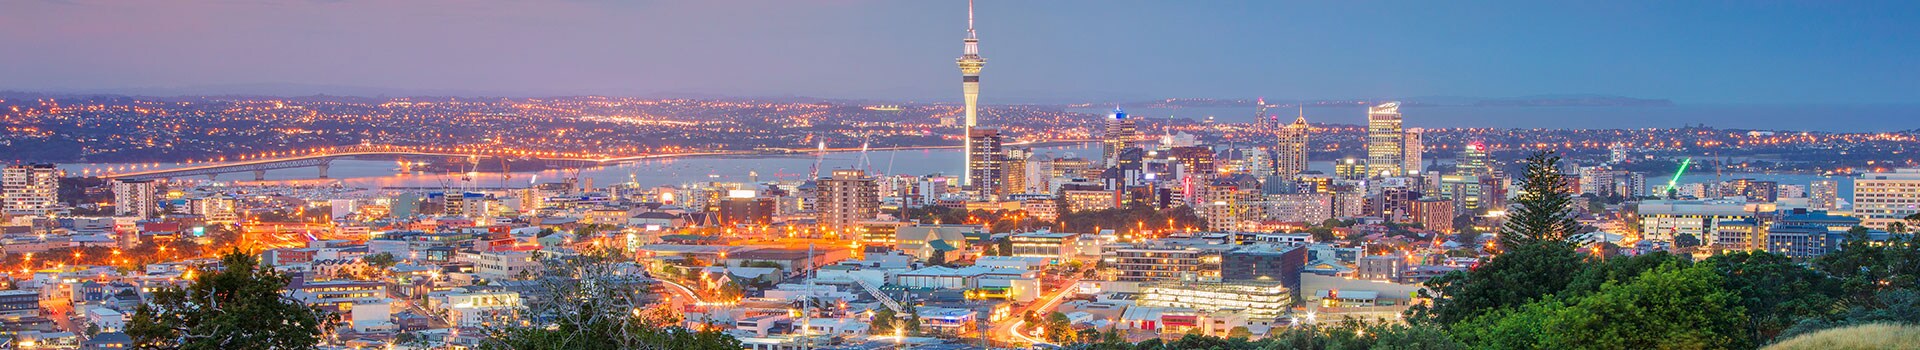 Lontoo - Auckland